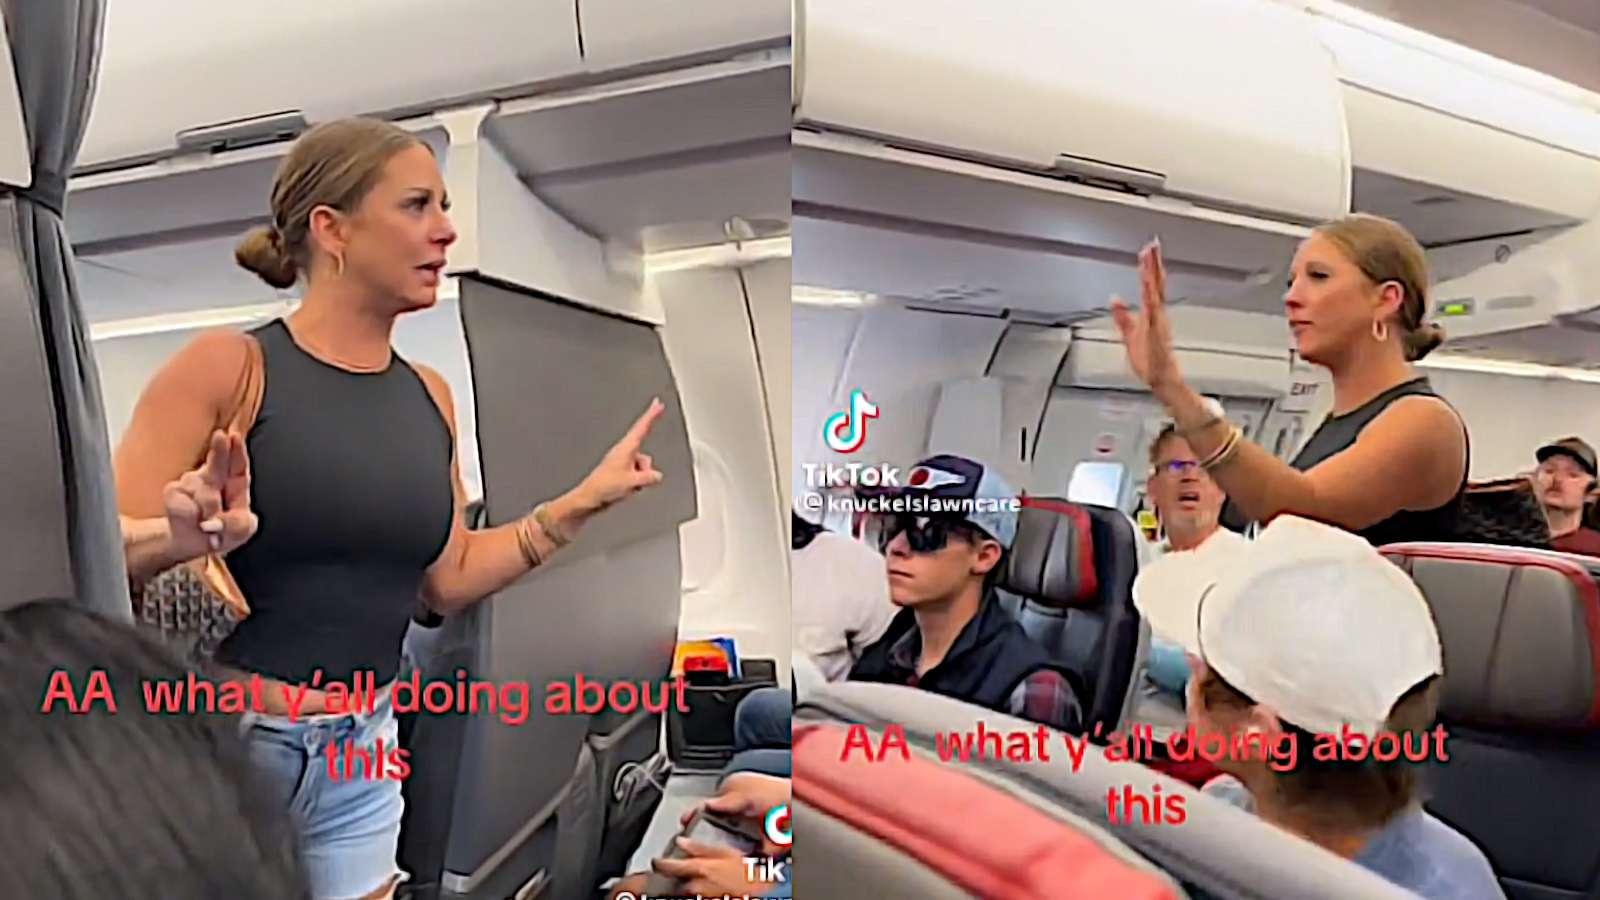 Una mujer se vuelve viral por un extraño arrebato y una alucinación en un avión